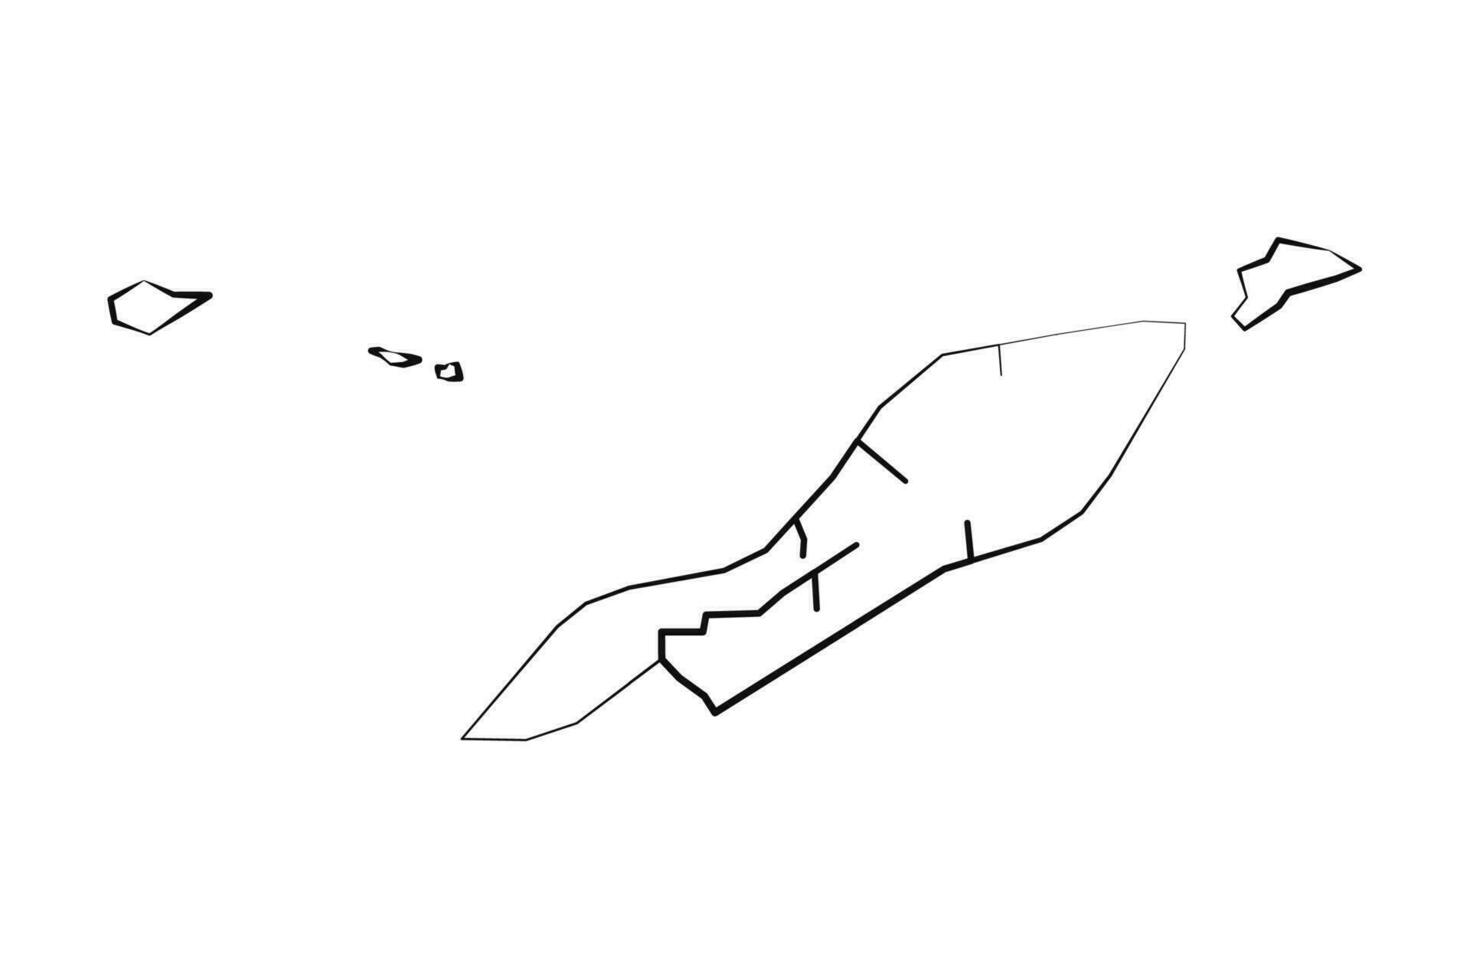 mano disegnato foderato anguilla semplice carta geografica disegno vettore